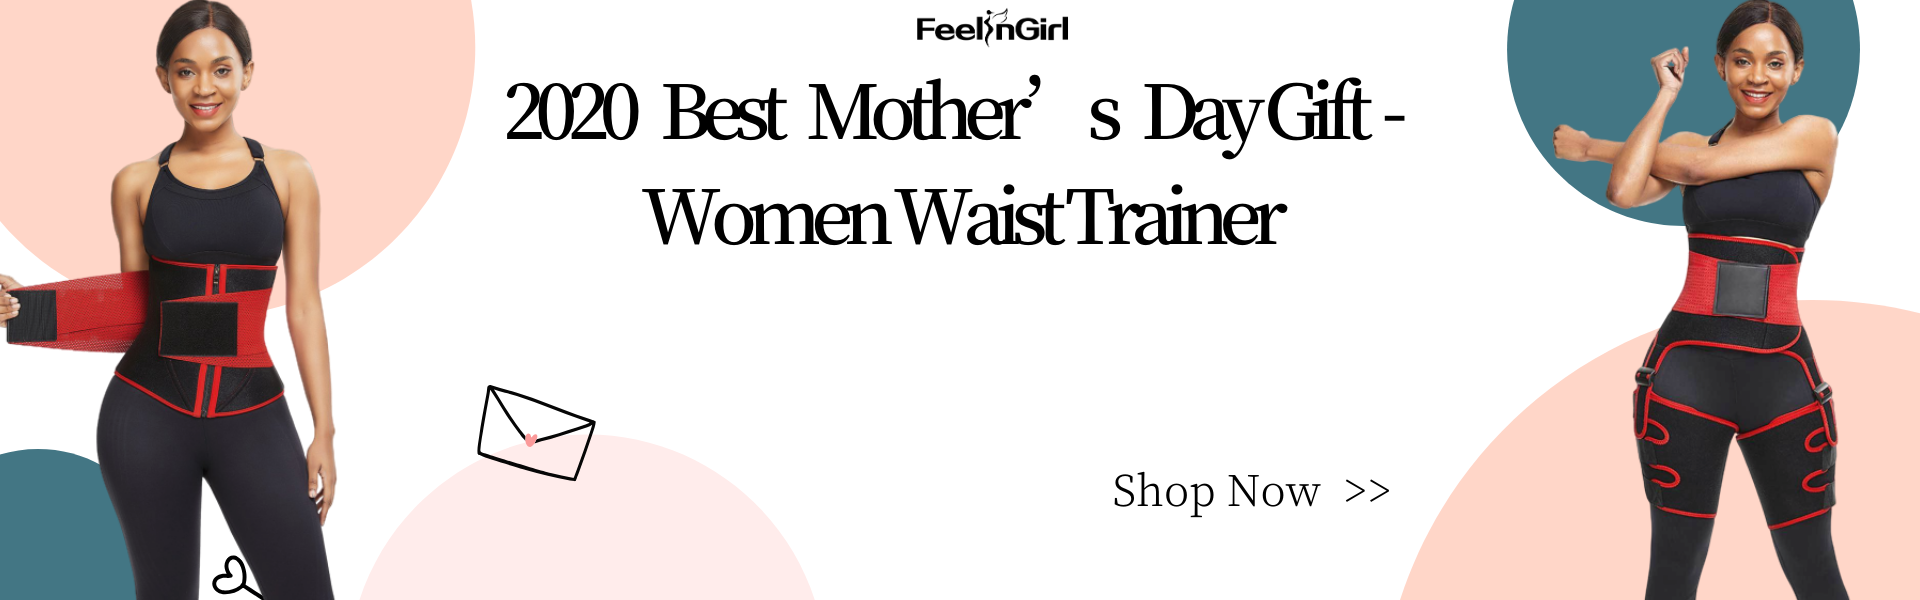 2020 Best Mother’s Day Gift - Women Waist Trainer